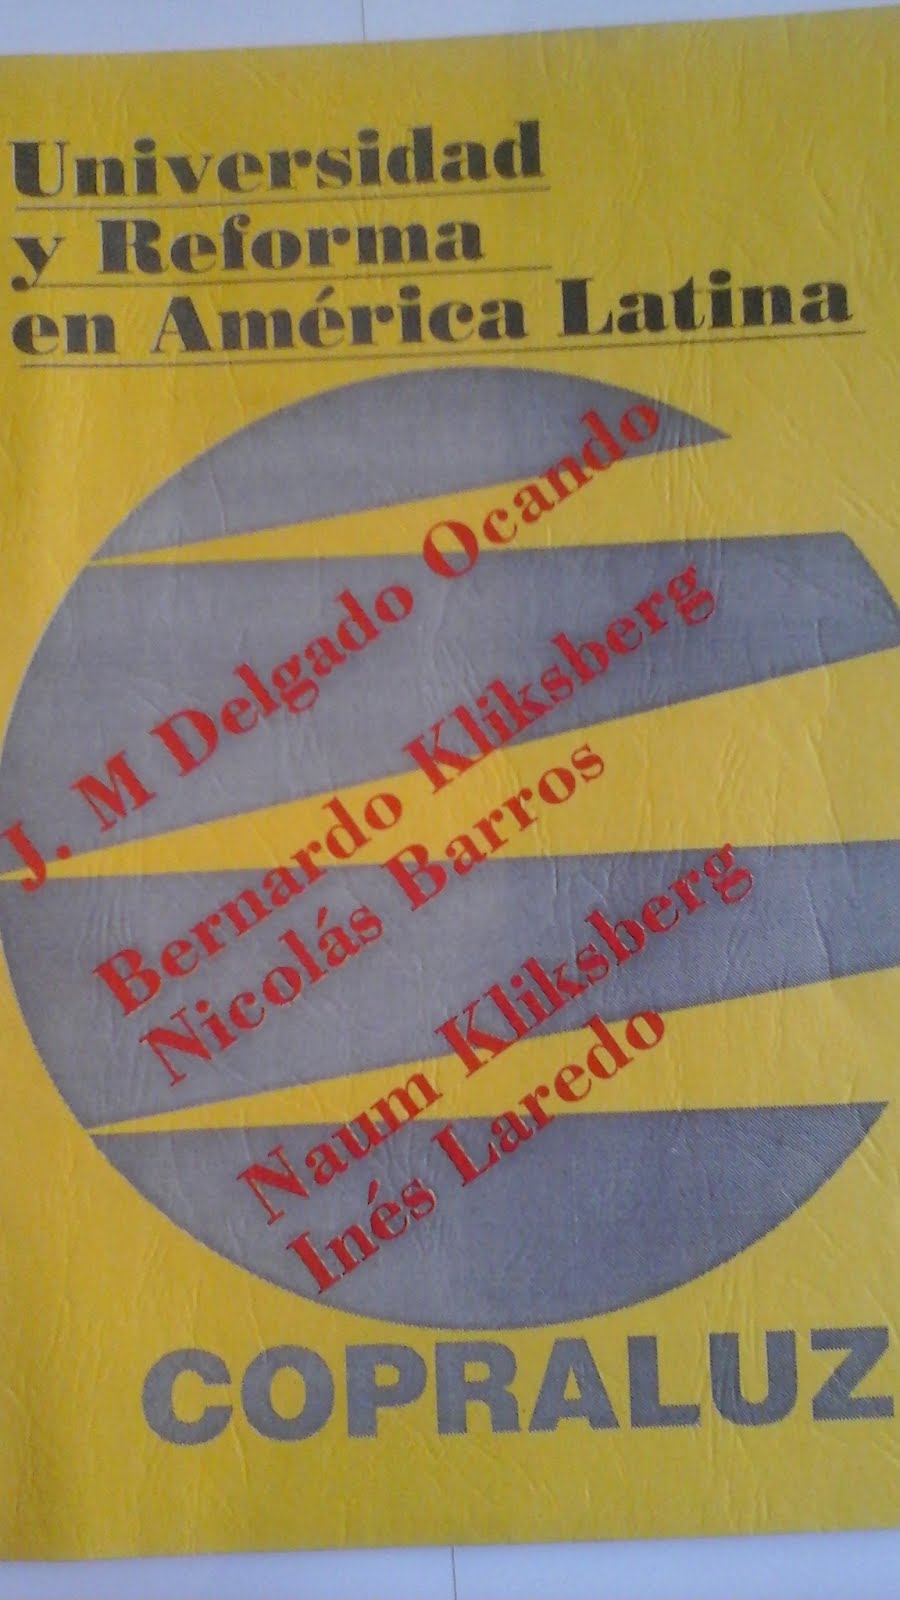 35 - Publicado por la Universidad del Zulia, Venezuela, 12/1990.